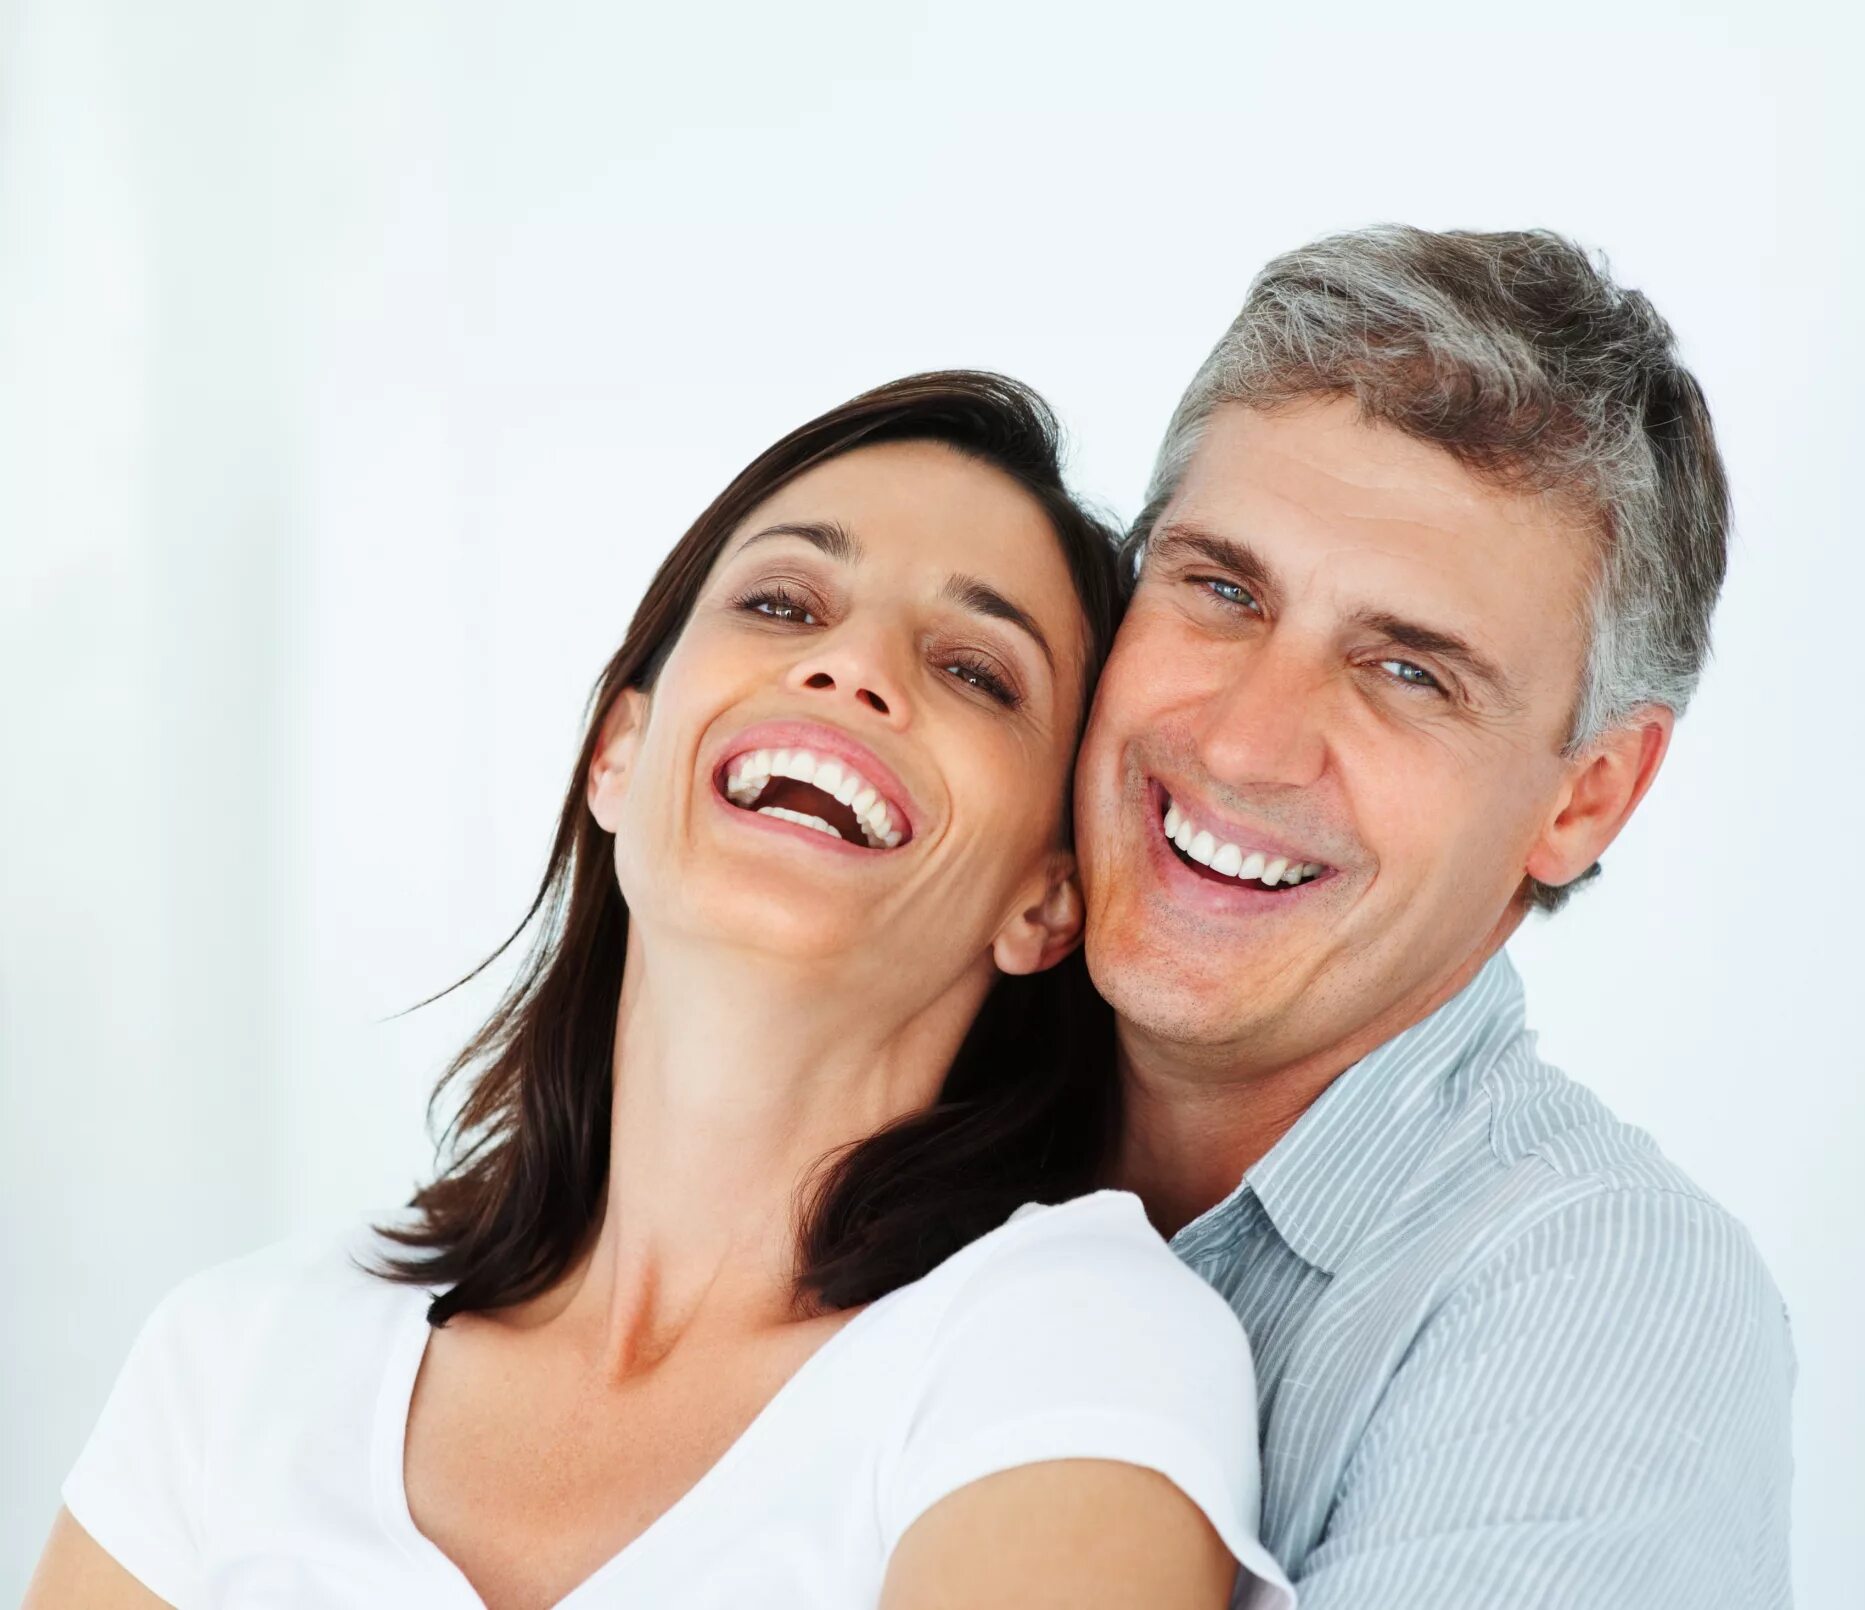 Зрелый возраст мужчины и женщины. Мужчина и женщина улыбаются. Мужчина улыбается. Взрослые улыбаются. Улыбка мужчина и женщина.